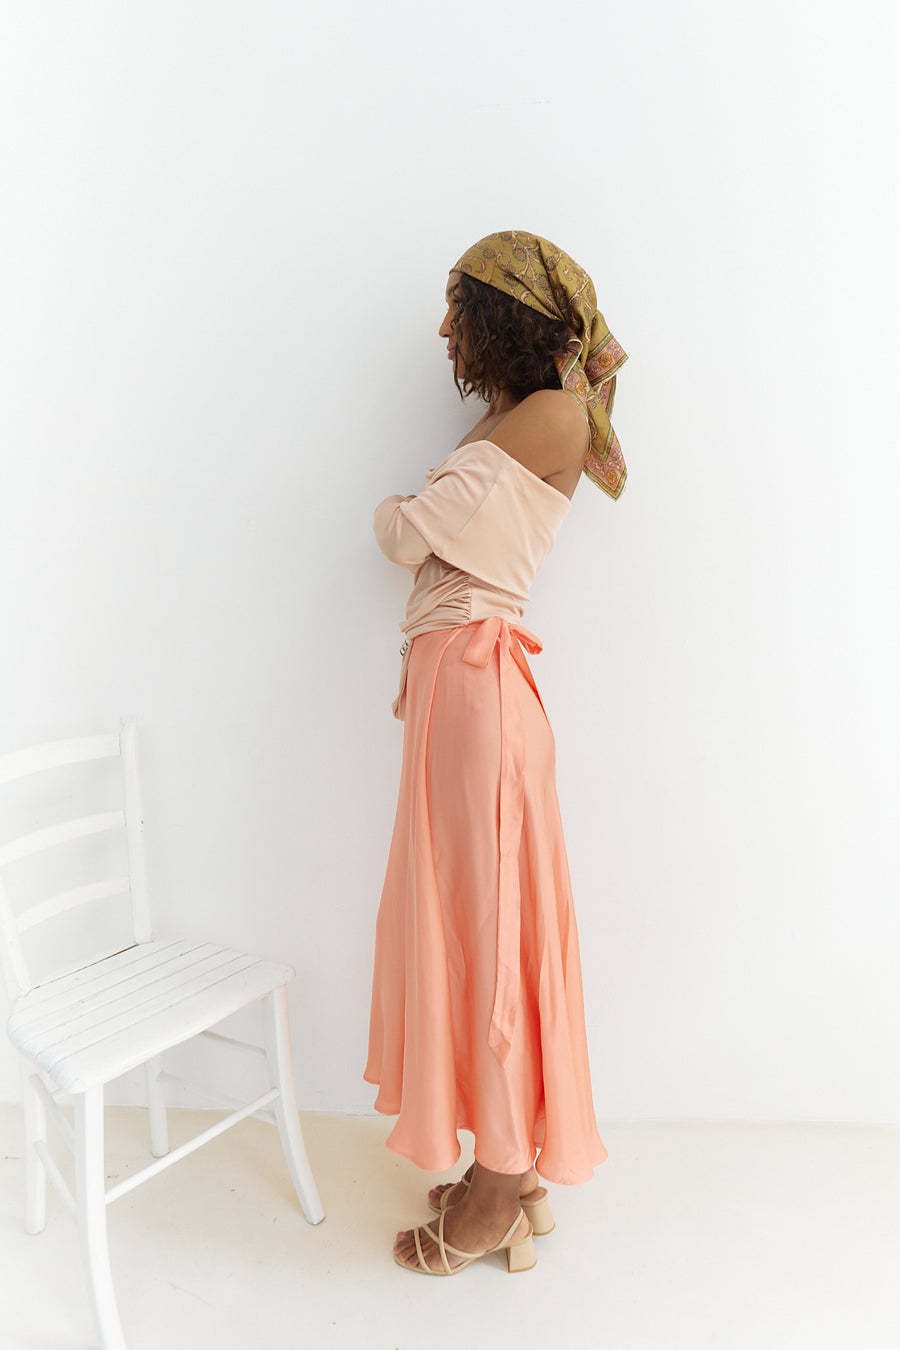 Meij-Nina Wrap Skirt (apricot), midi length skirt